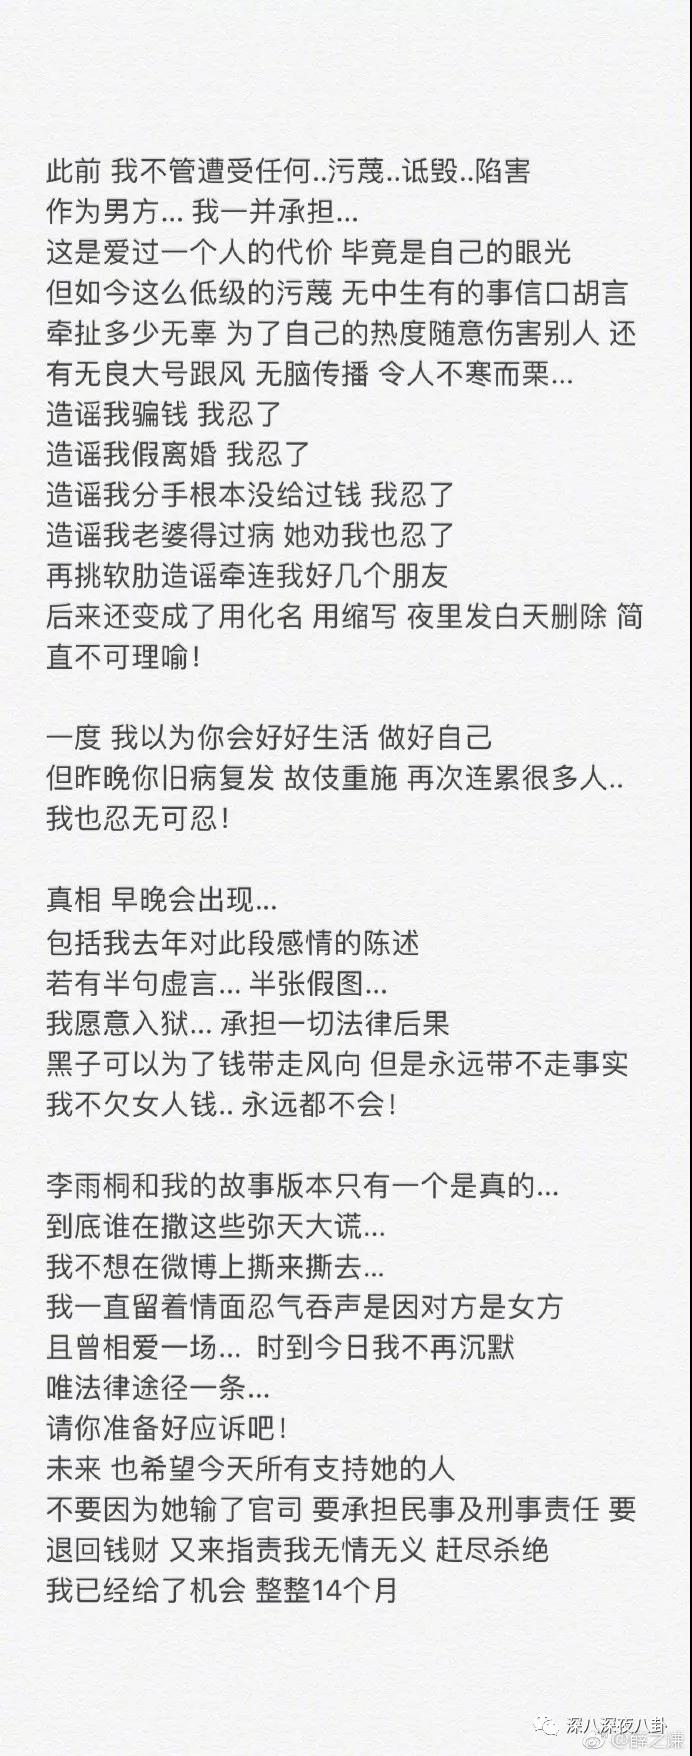 WeChat_Image_20181204114040.jpg